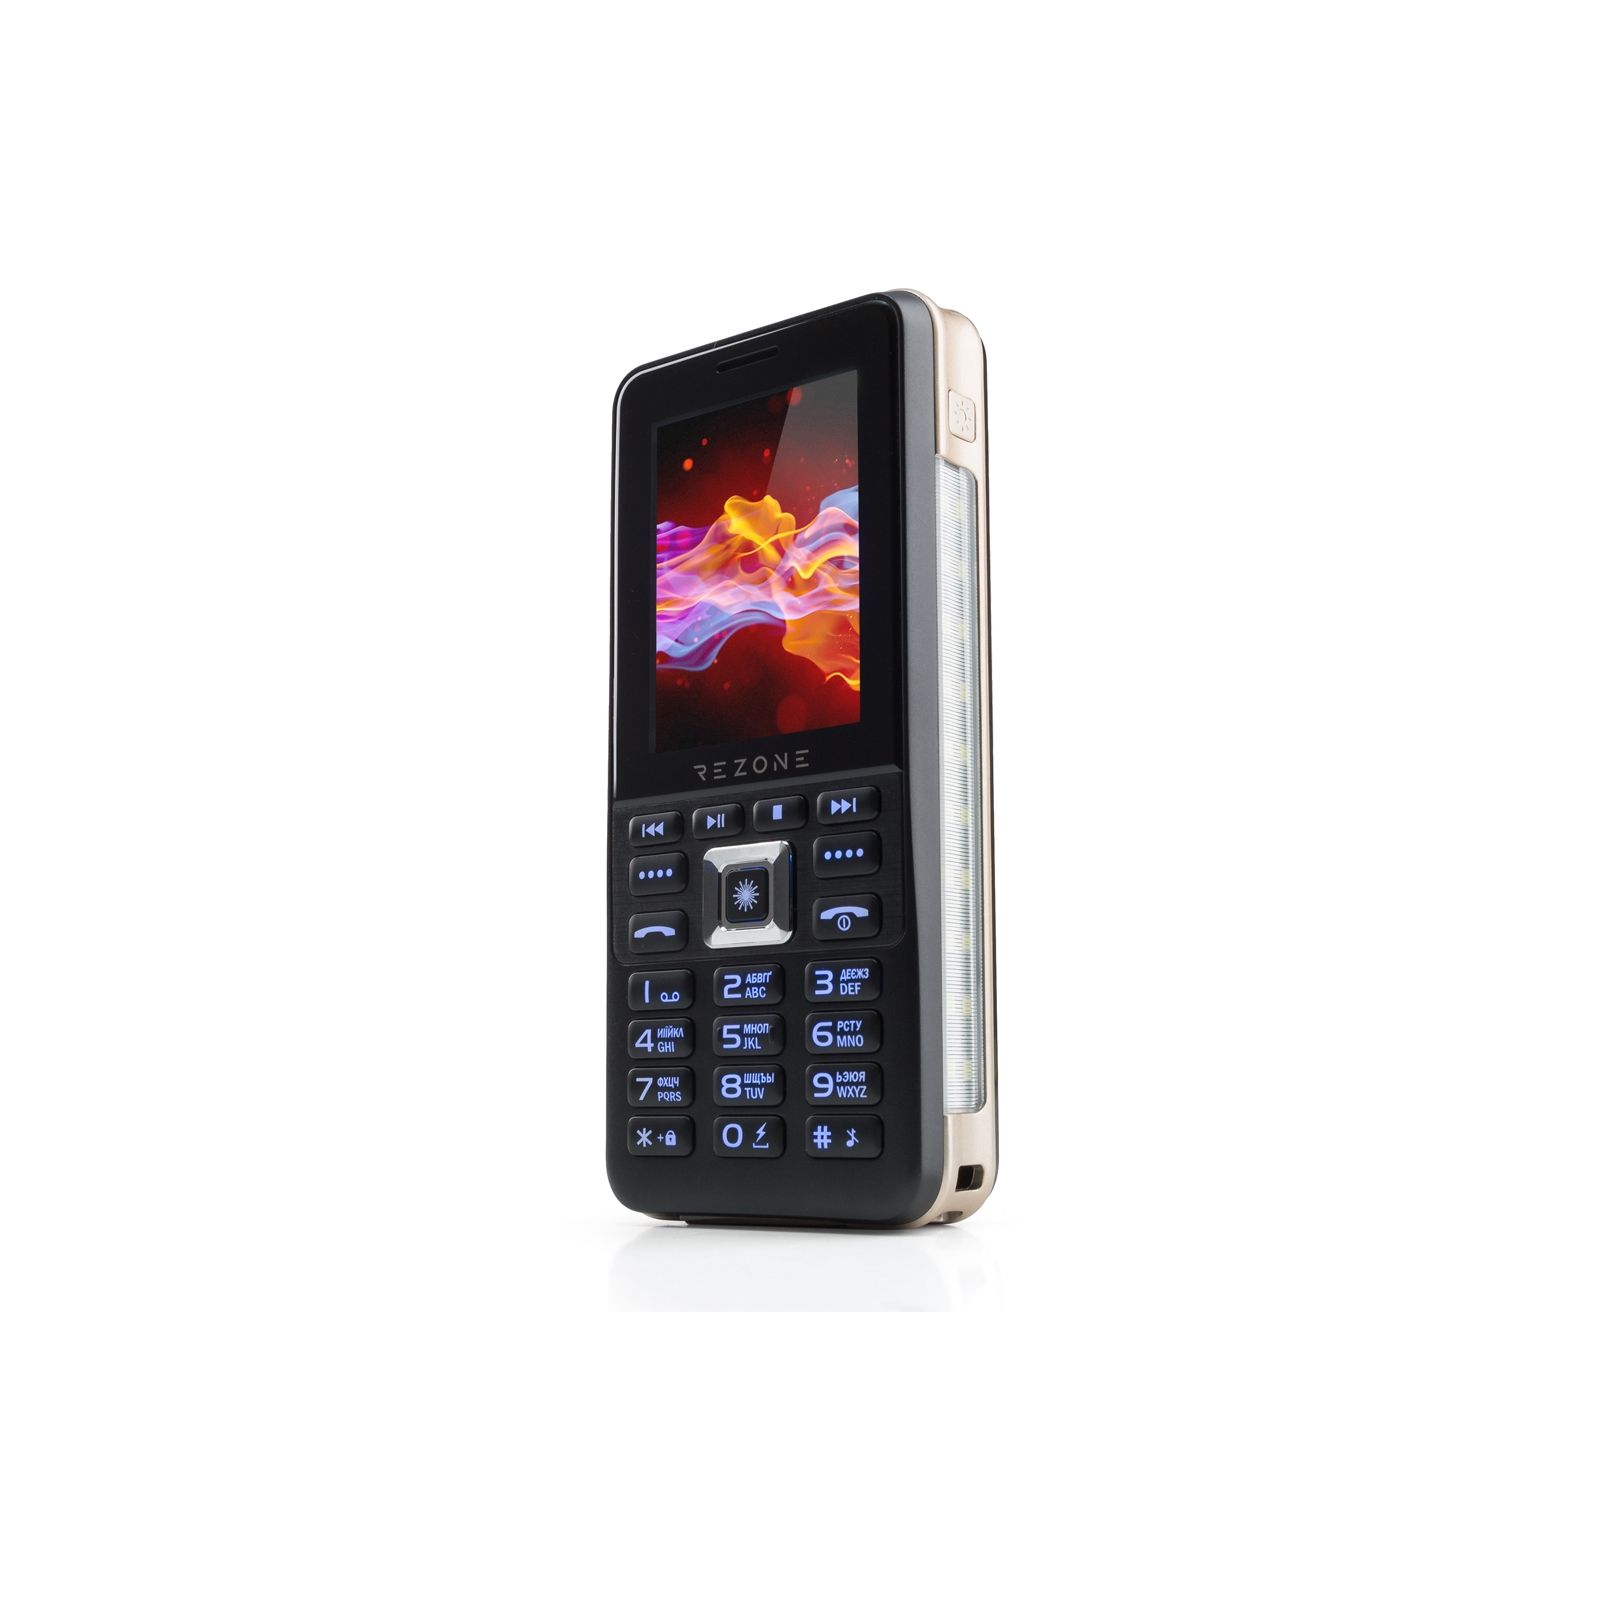 Мобильный телефон Rezone A281 Force Black